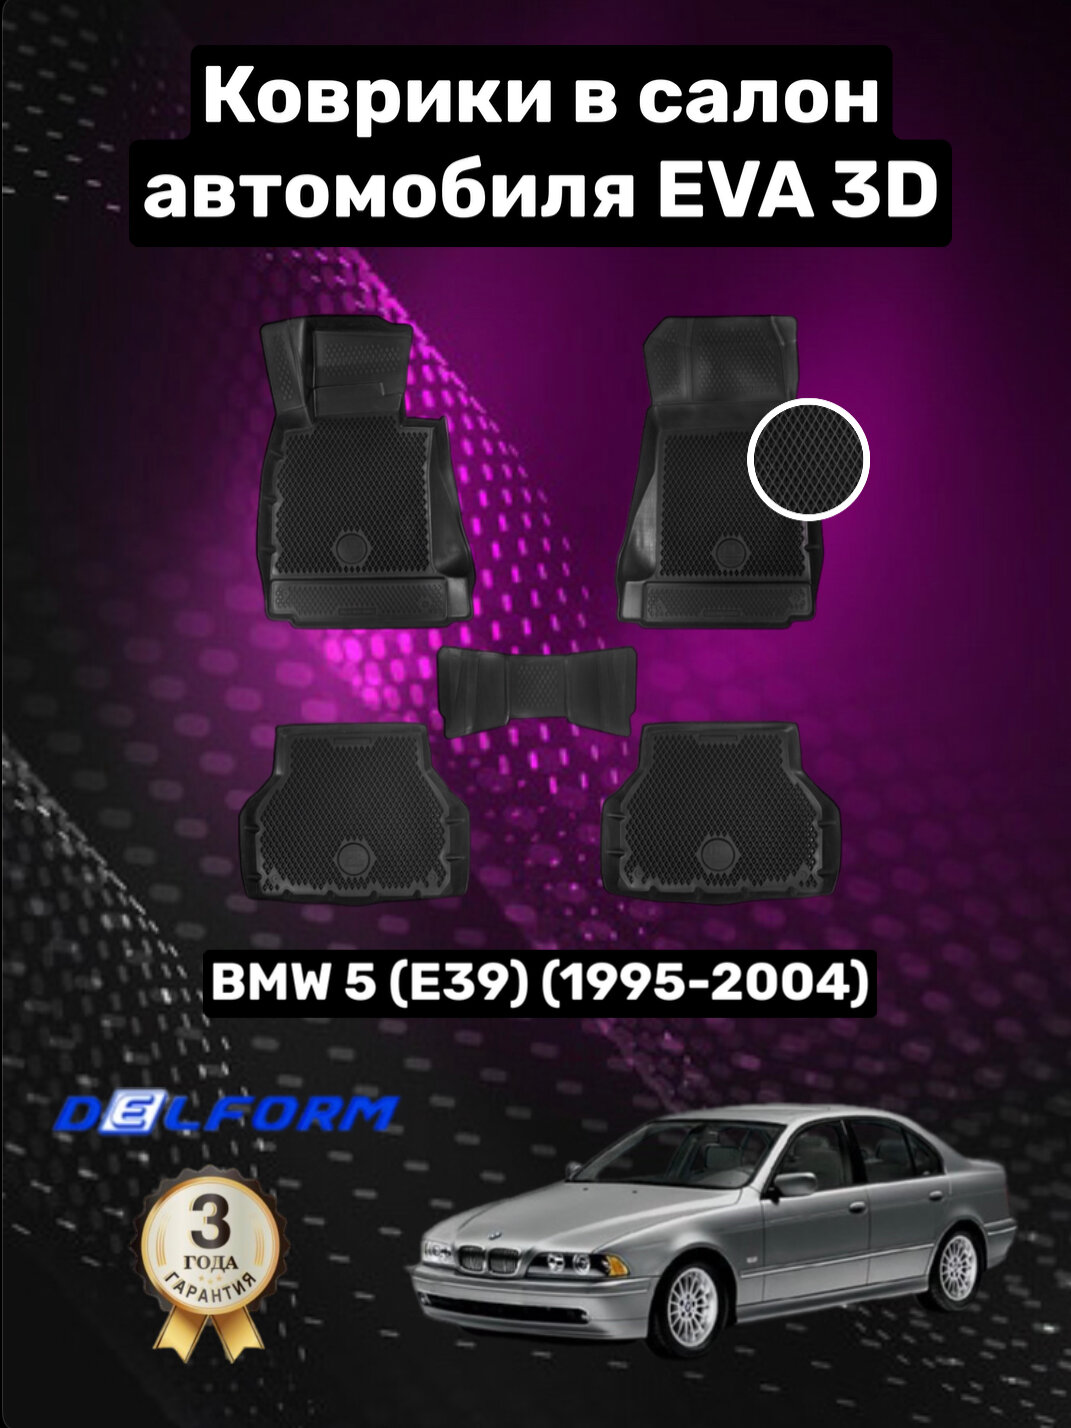 Эва/Eva/Ева коврики c бортами БМВ 5 е39 (1995-2004)/BMW 5 E39 (1995-2004) DELFORM 3D Premium ("EVA 3D") cалон